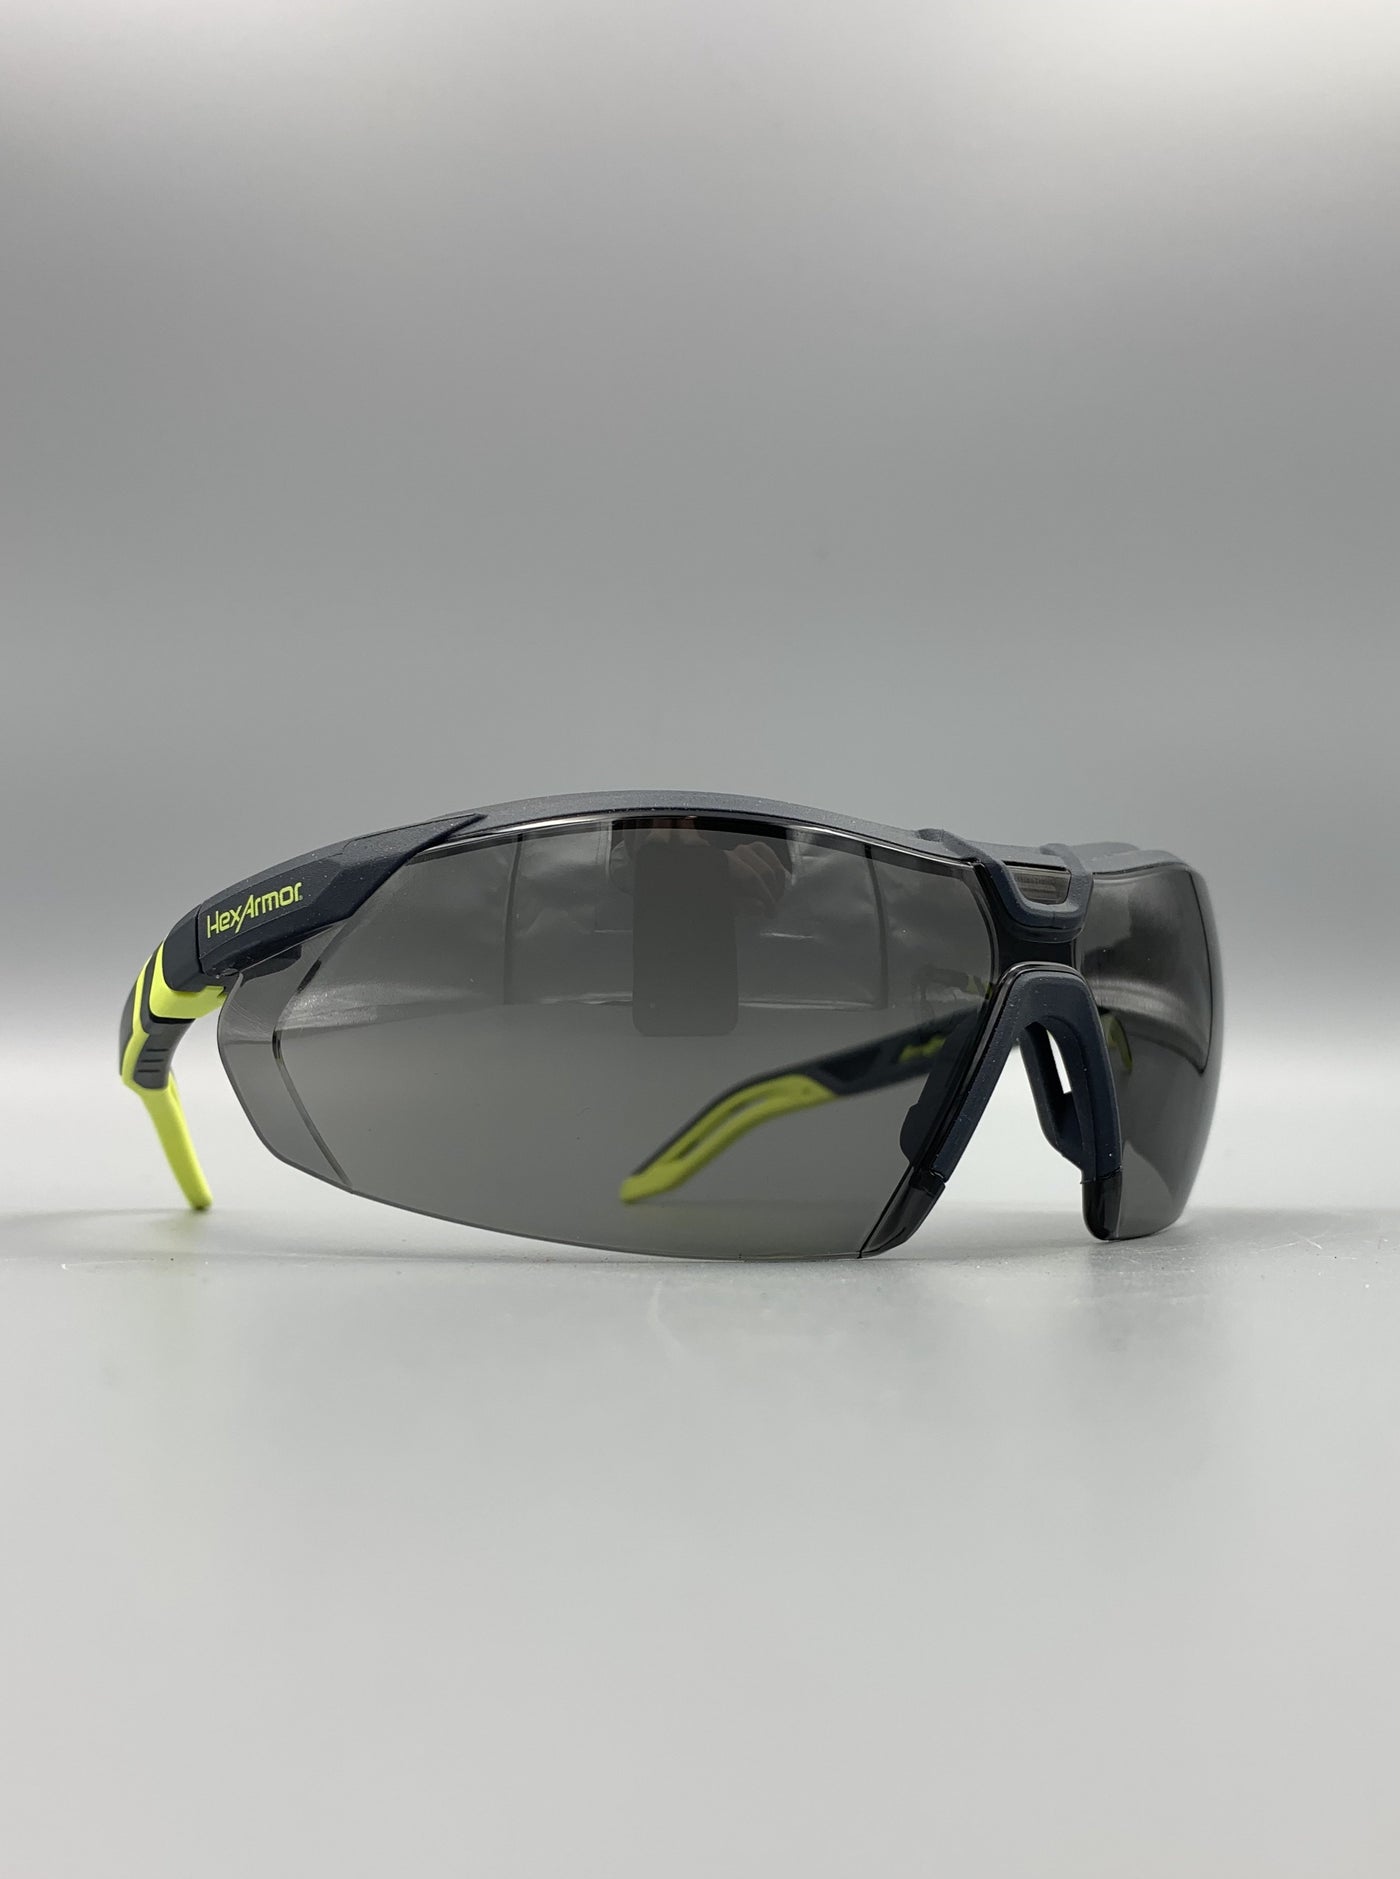 HexArmor VS450 Eye Protection